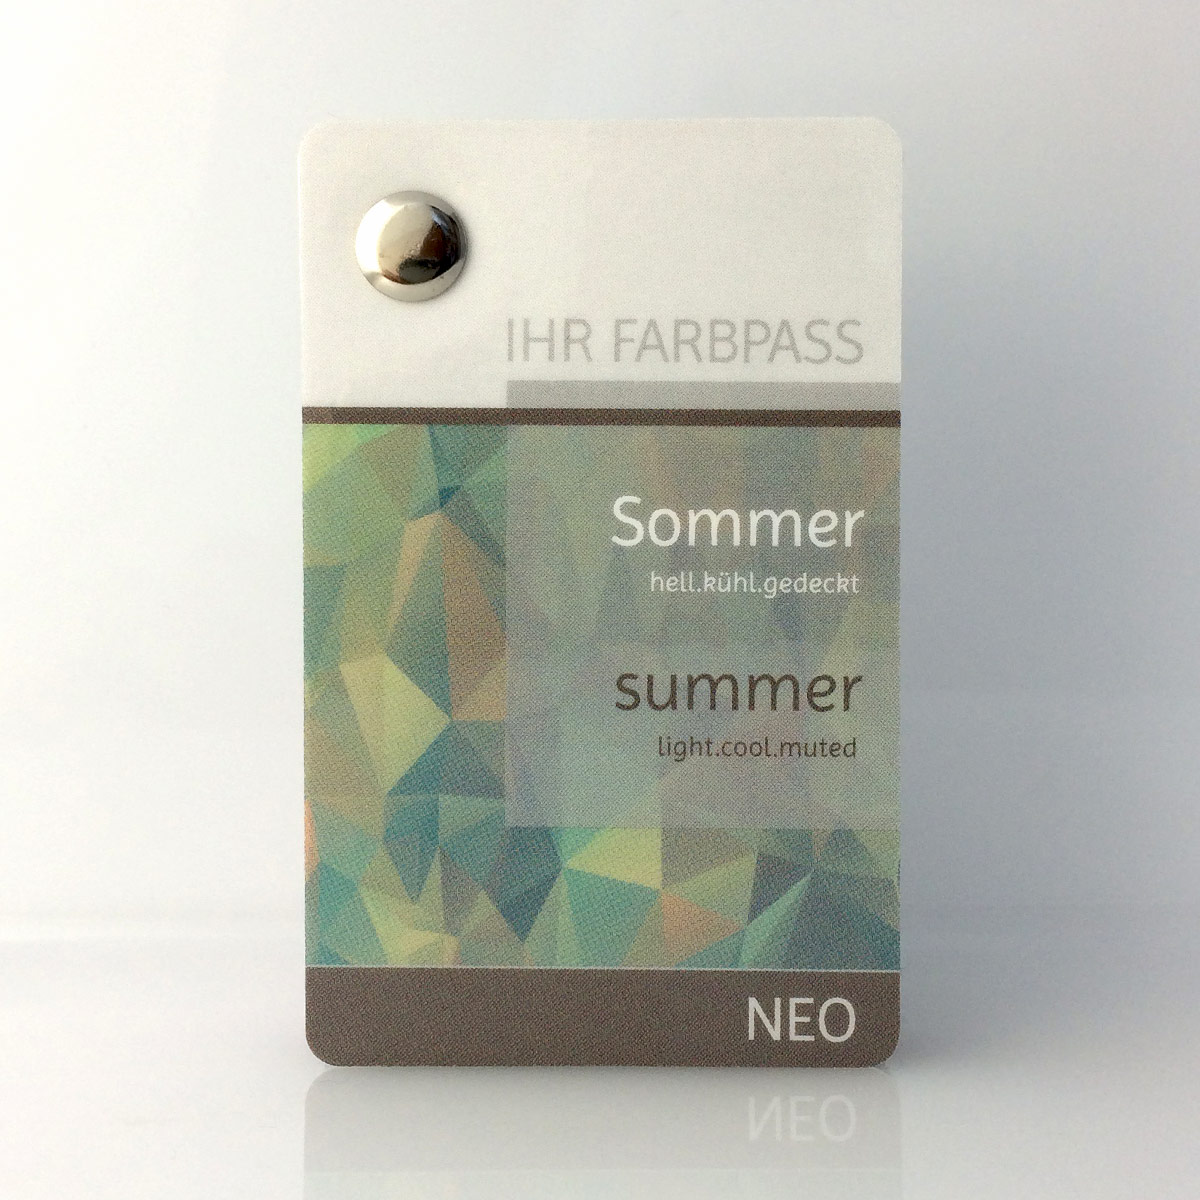 Farbpass Sommertyp zur Farbberatung - Neo | Komood